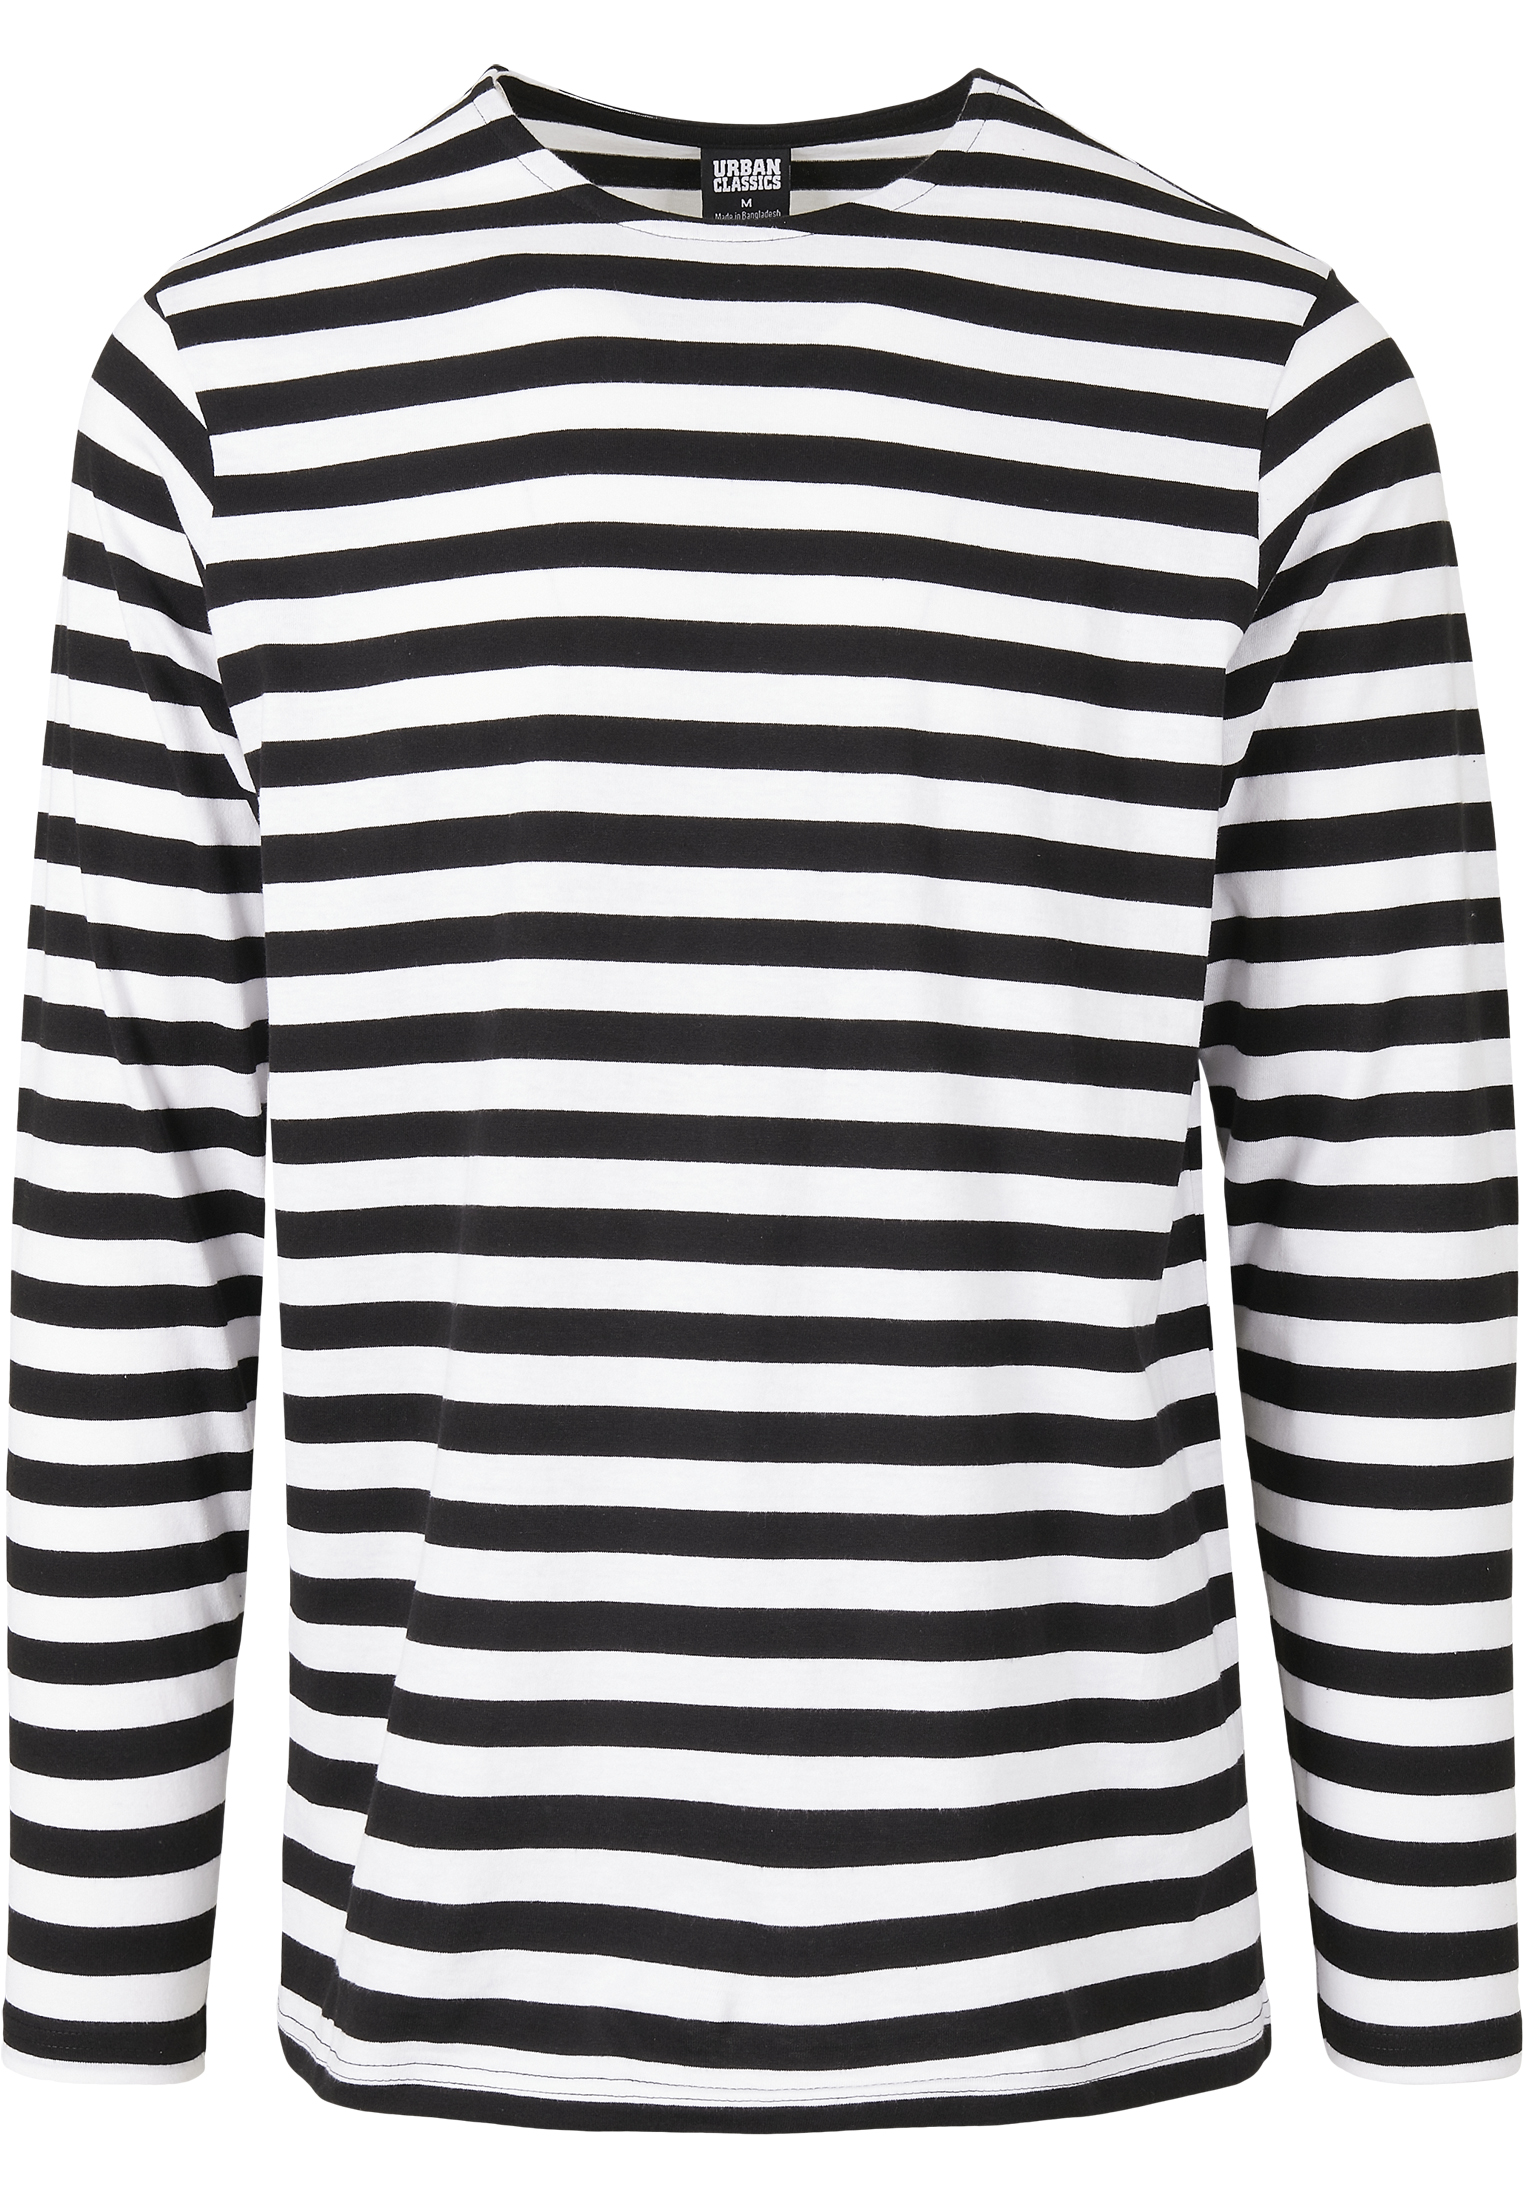 Longsleeves Regular Stripe LS in Farbe white/black